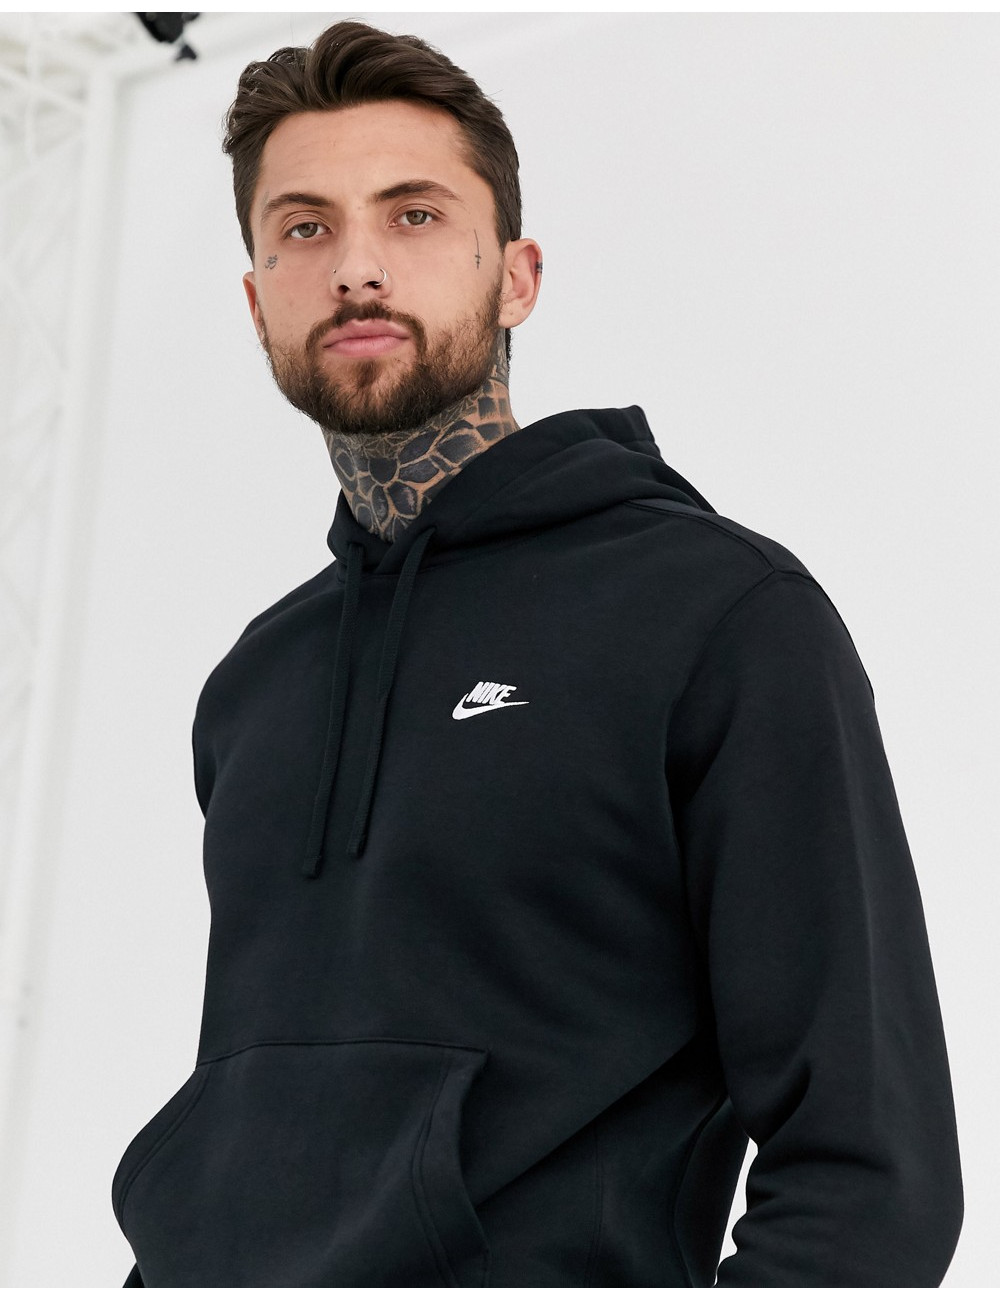 Nike Club hoodie in black